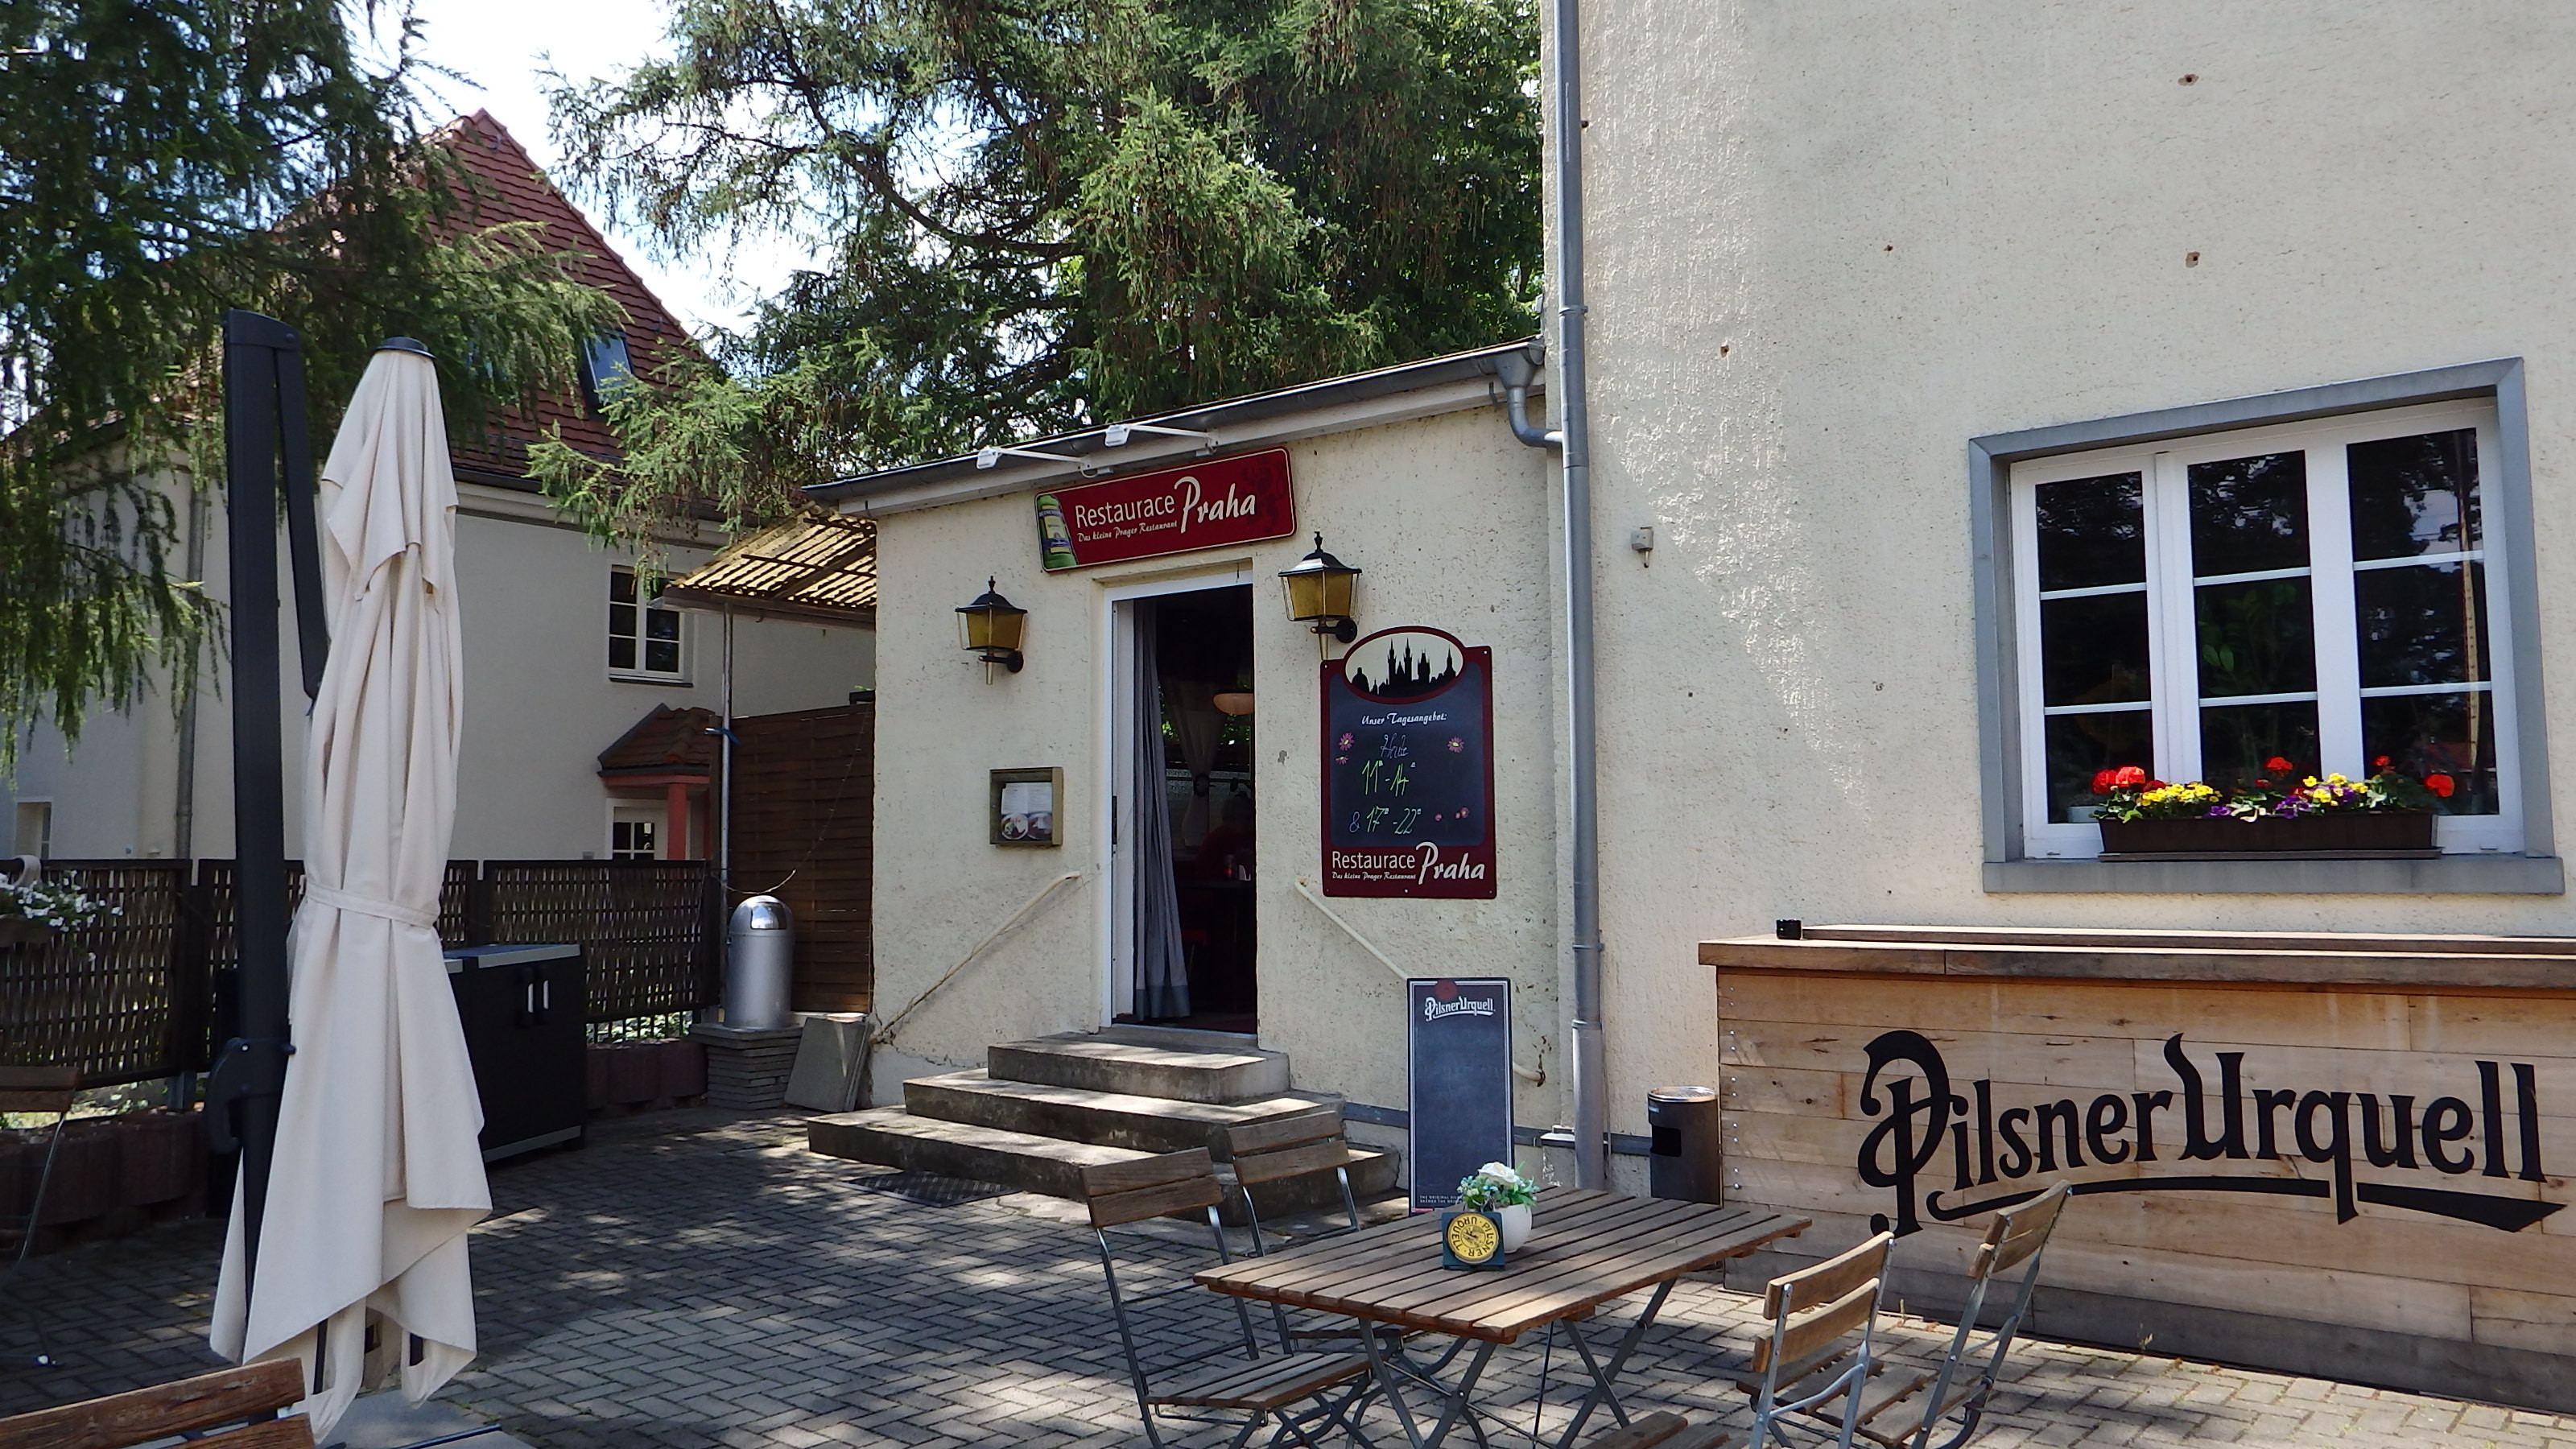 Ein kleines Restaurant, das mit leckeren tschechischen Speisen überzeugt - so versteht sich das Praha im Dresdner Norden.